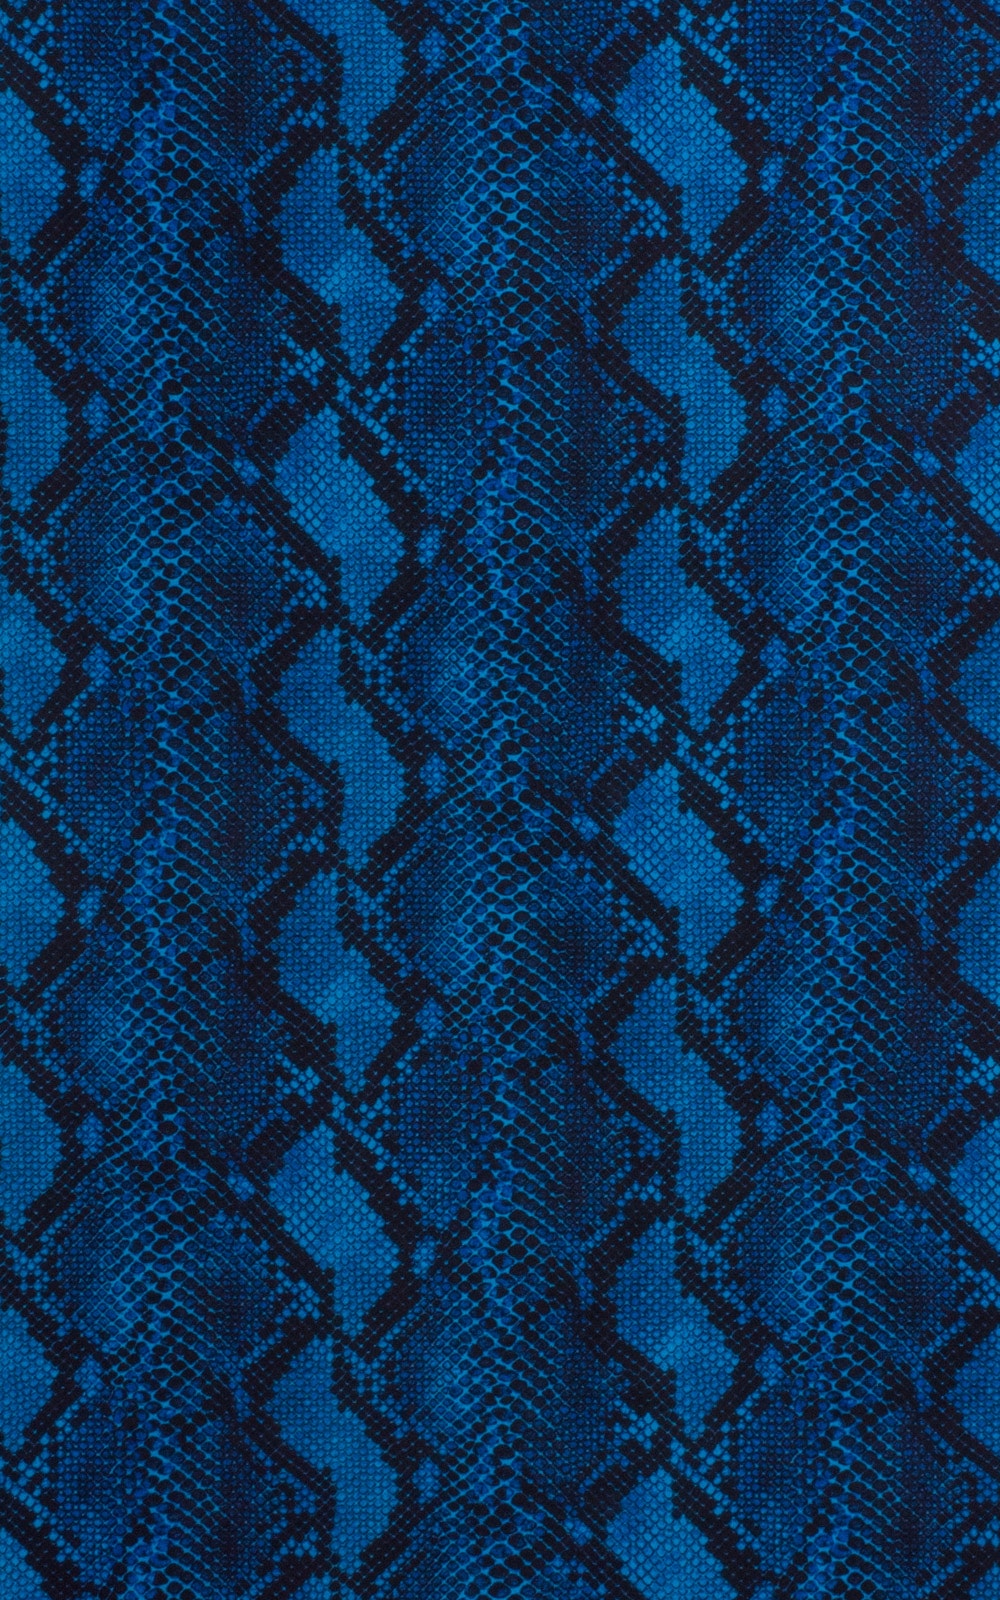 4-Way Adjustable Bikini-Tanga-Micro in Super ThinSKINZ Blue Serpent Fabric